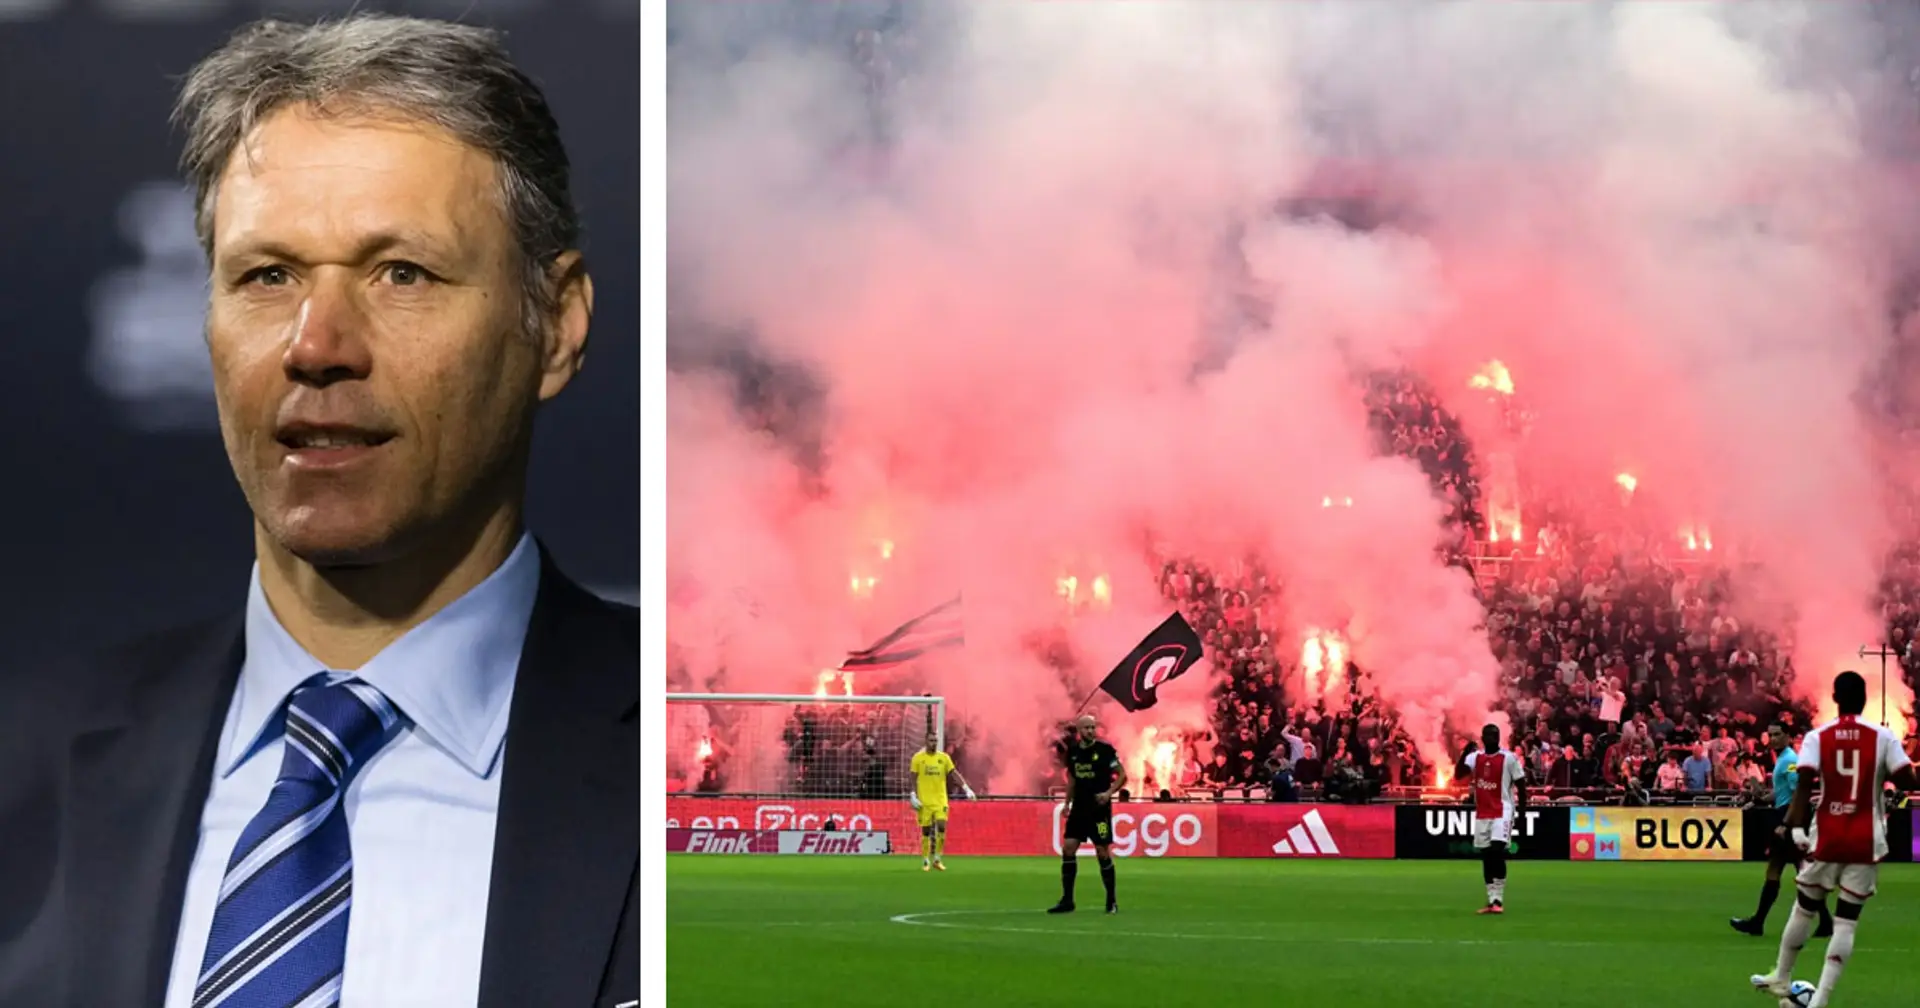 "Le football doit être arrêté aux Pays-Bas" : Van Basten dénonce les supporters de l'Ajax après les émeutes